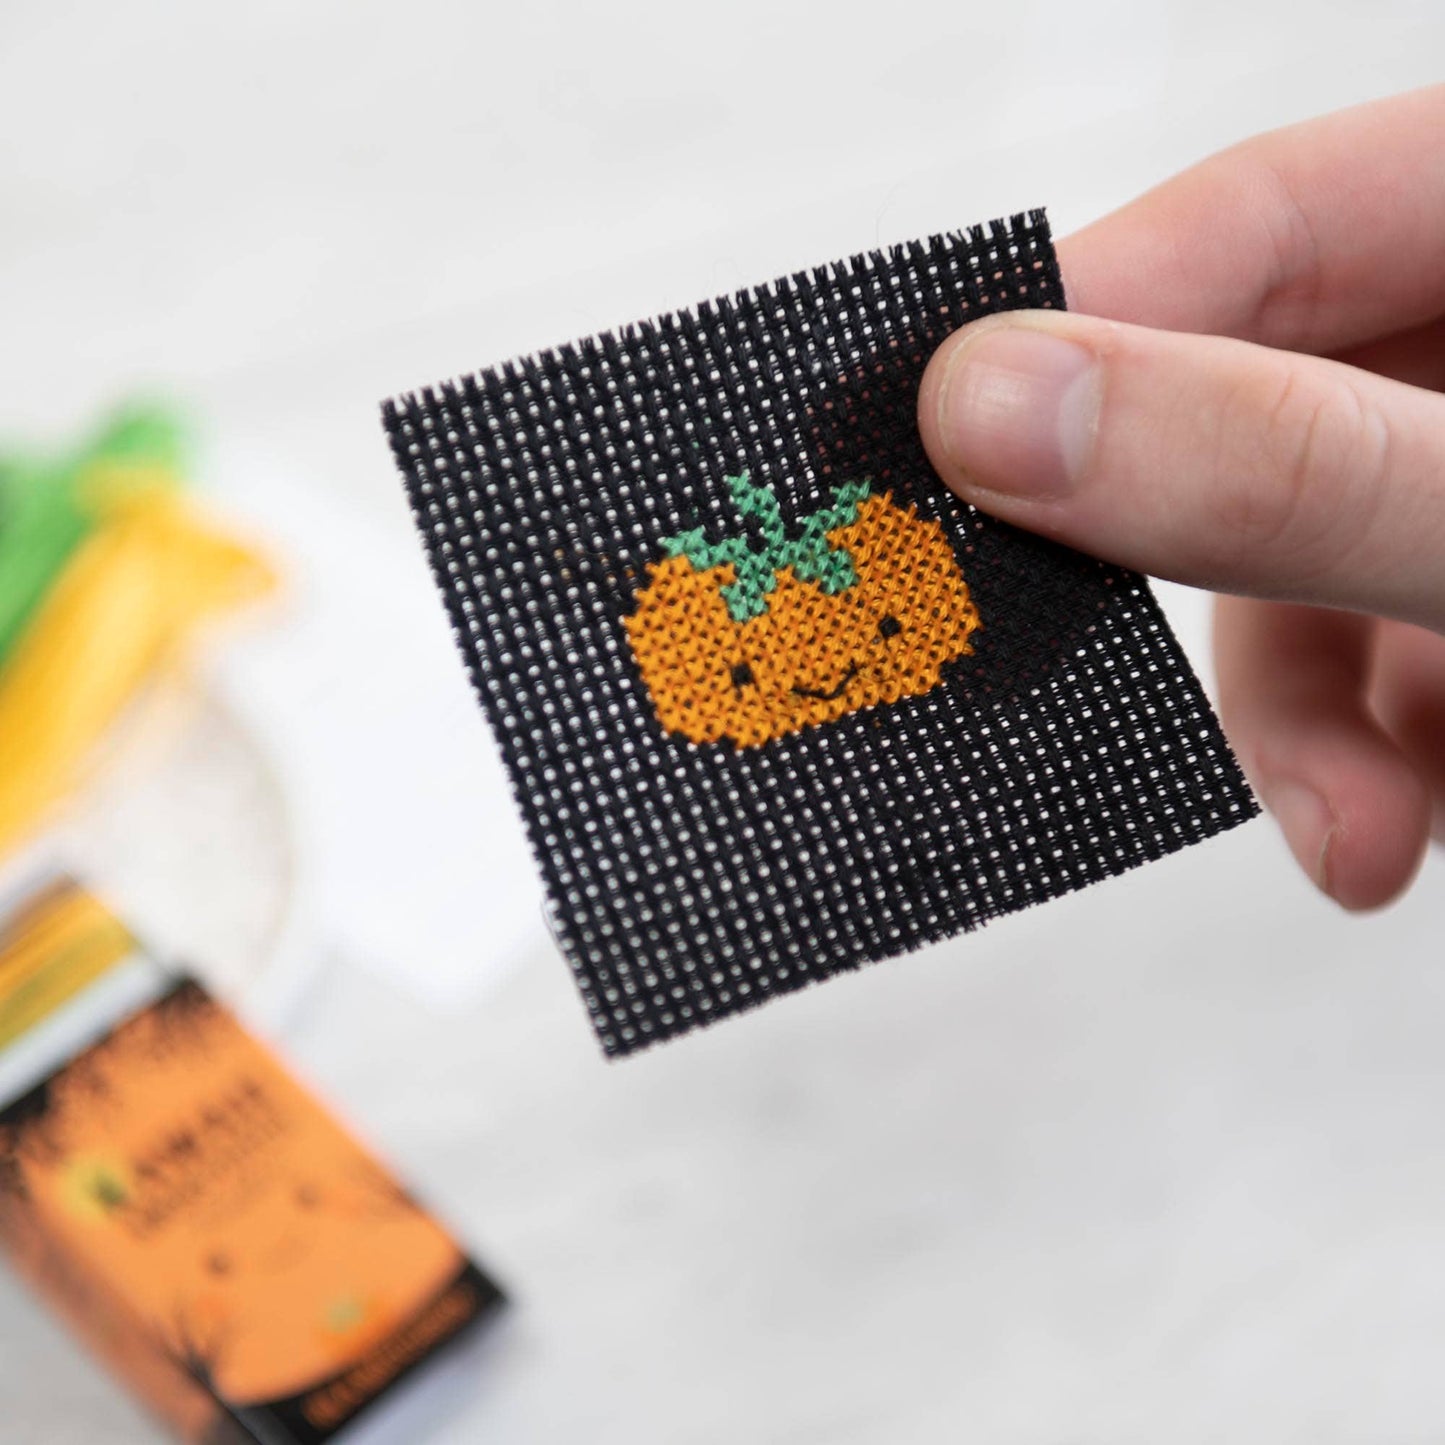 Kawaii Halloween Pumpkin Mini Cross Stitch Kit